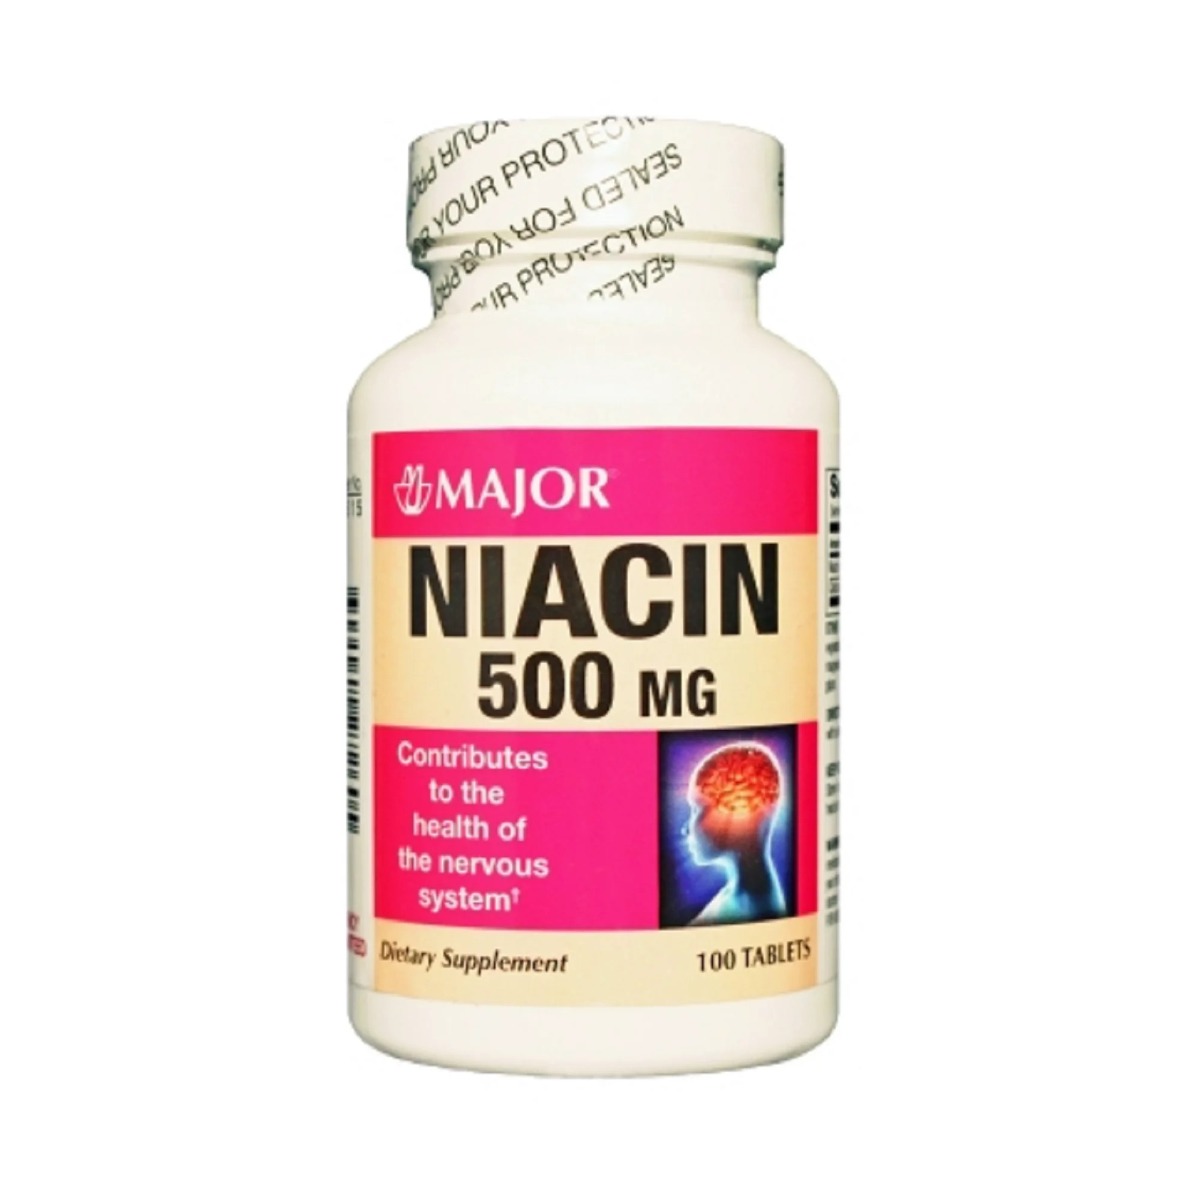 Major Niacin Supplement